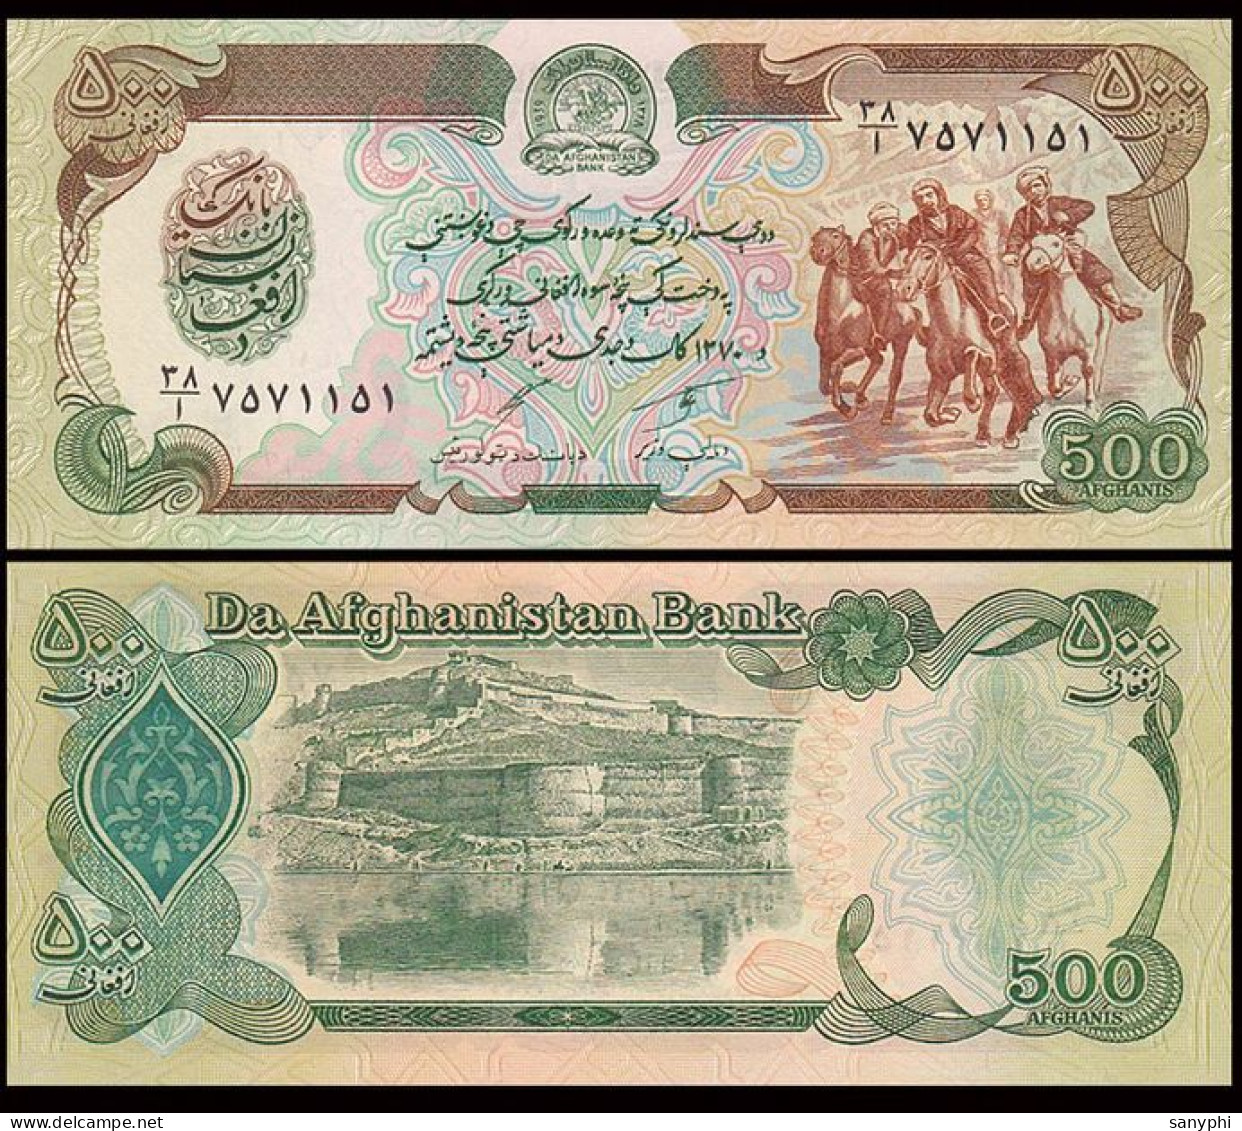 Afganistan Bank 1991 500N UNC P-60 - Afghanistan